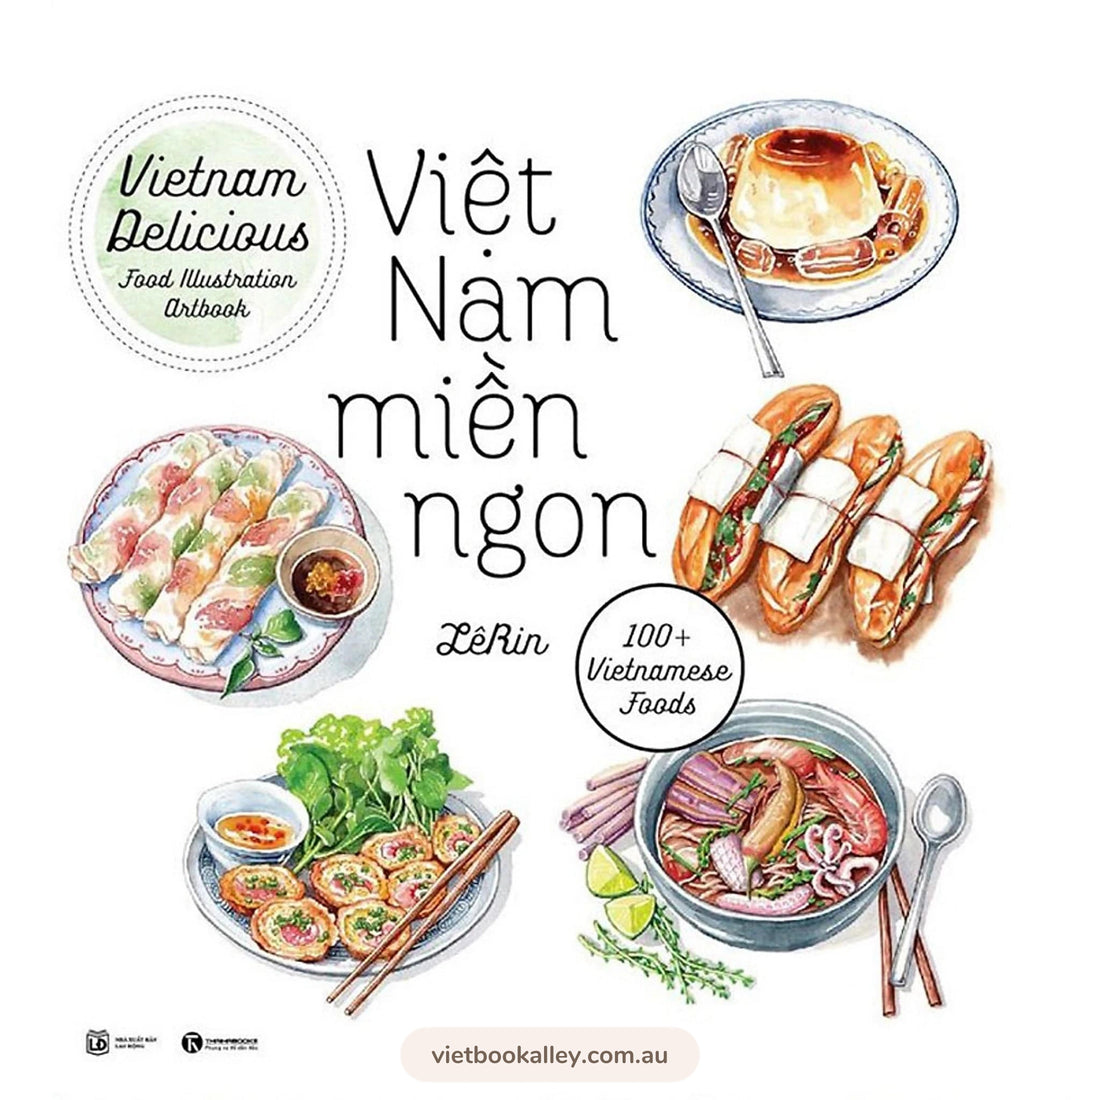 Ẩm thực Việt Nam là một kho tàng vô cùng phong phú, đa dạng và độc đáo. Từ món ăn đường phố đến những món ăn cao cấp, từ miền Bắc đến miền Nam, ẩm thực Việt Nam luôn khiến cho người dân và du khách ở lại đây không thể quên được.